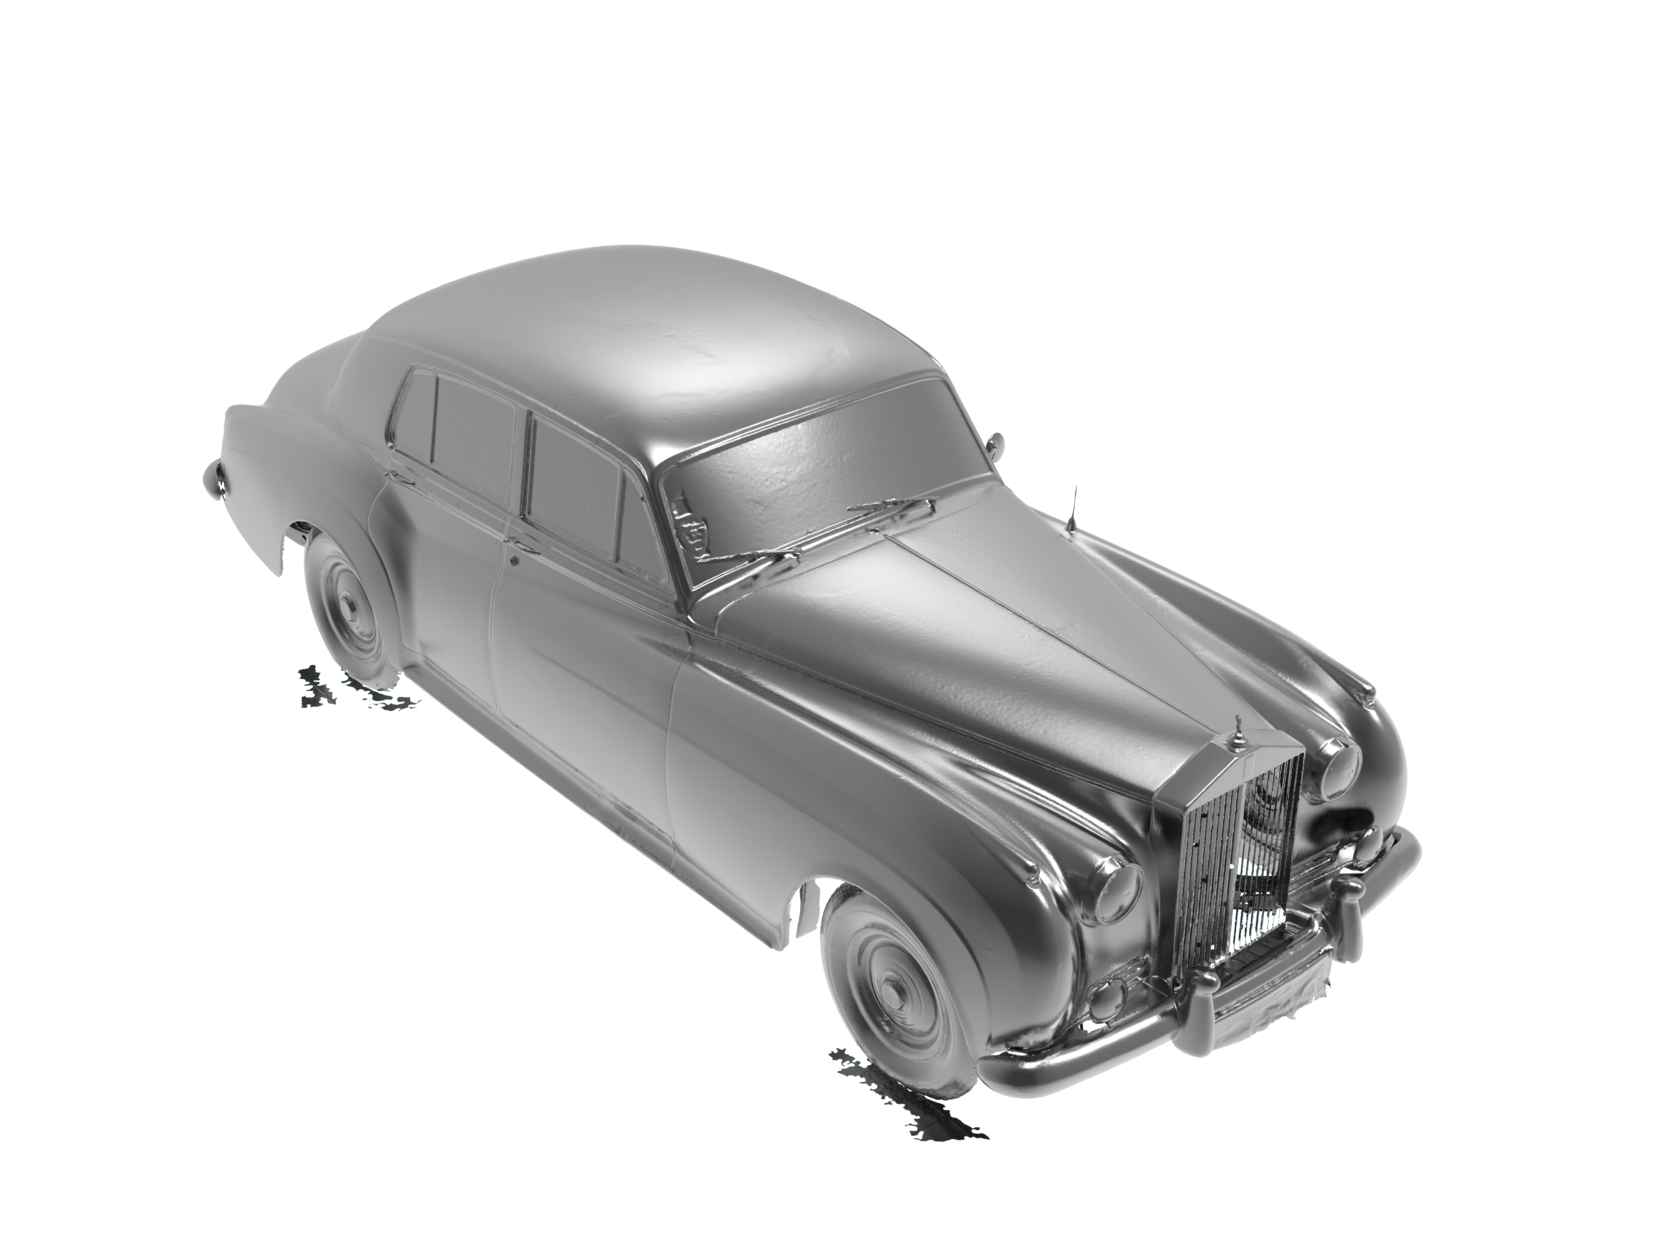 Результат работ по 3d сканирование автомобиля Rolls-Royce Silver Cloud. 3д модель в формате STL future-perfect.design